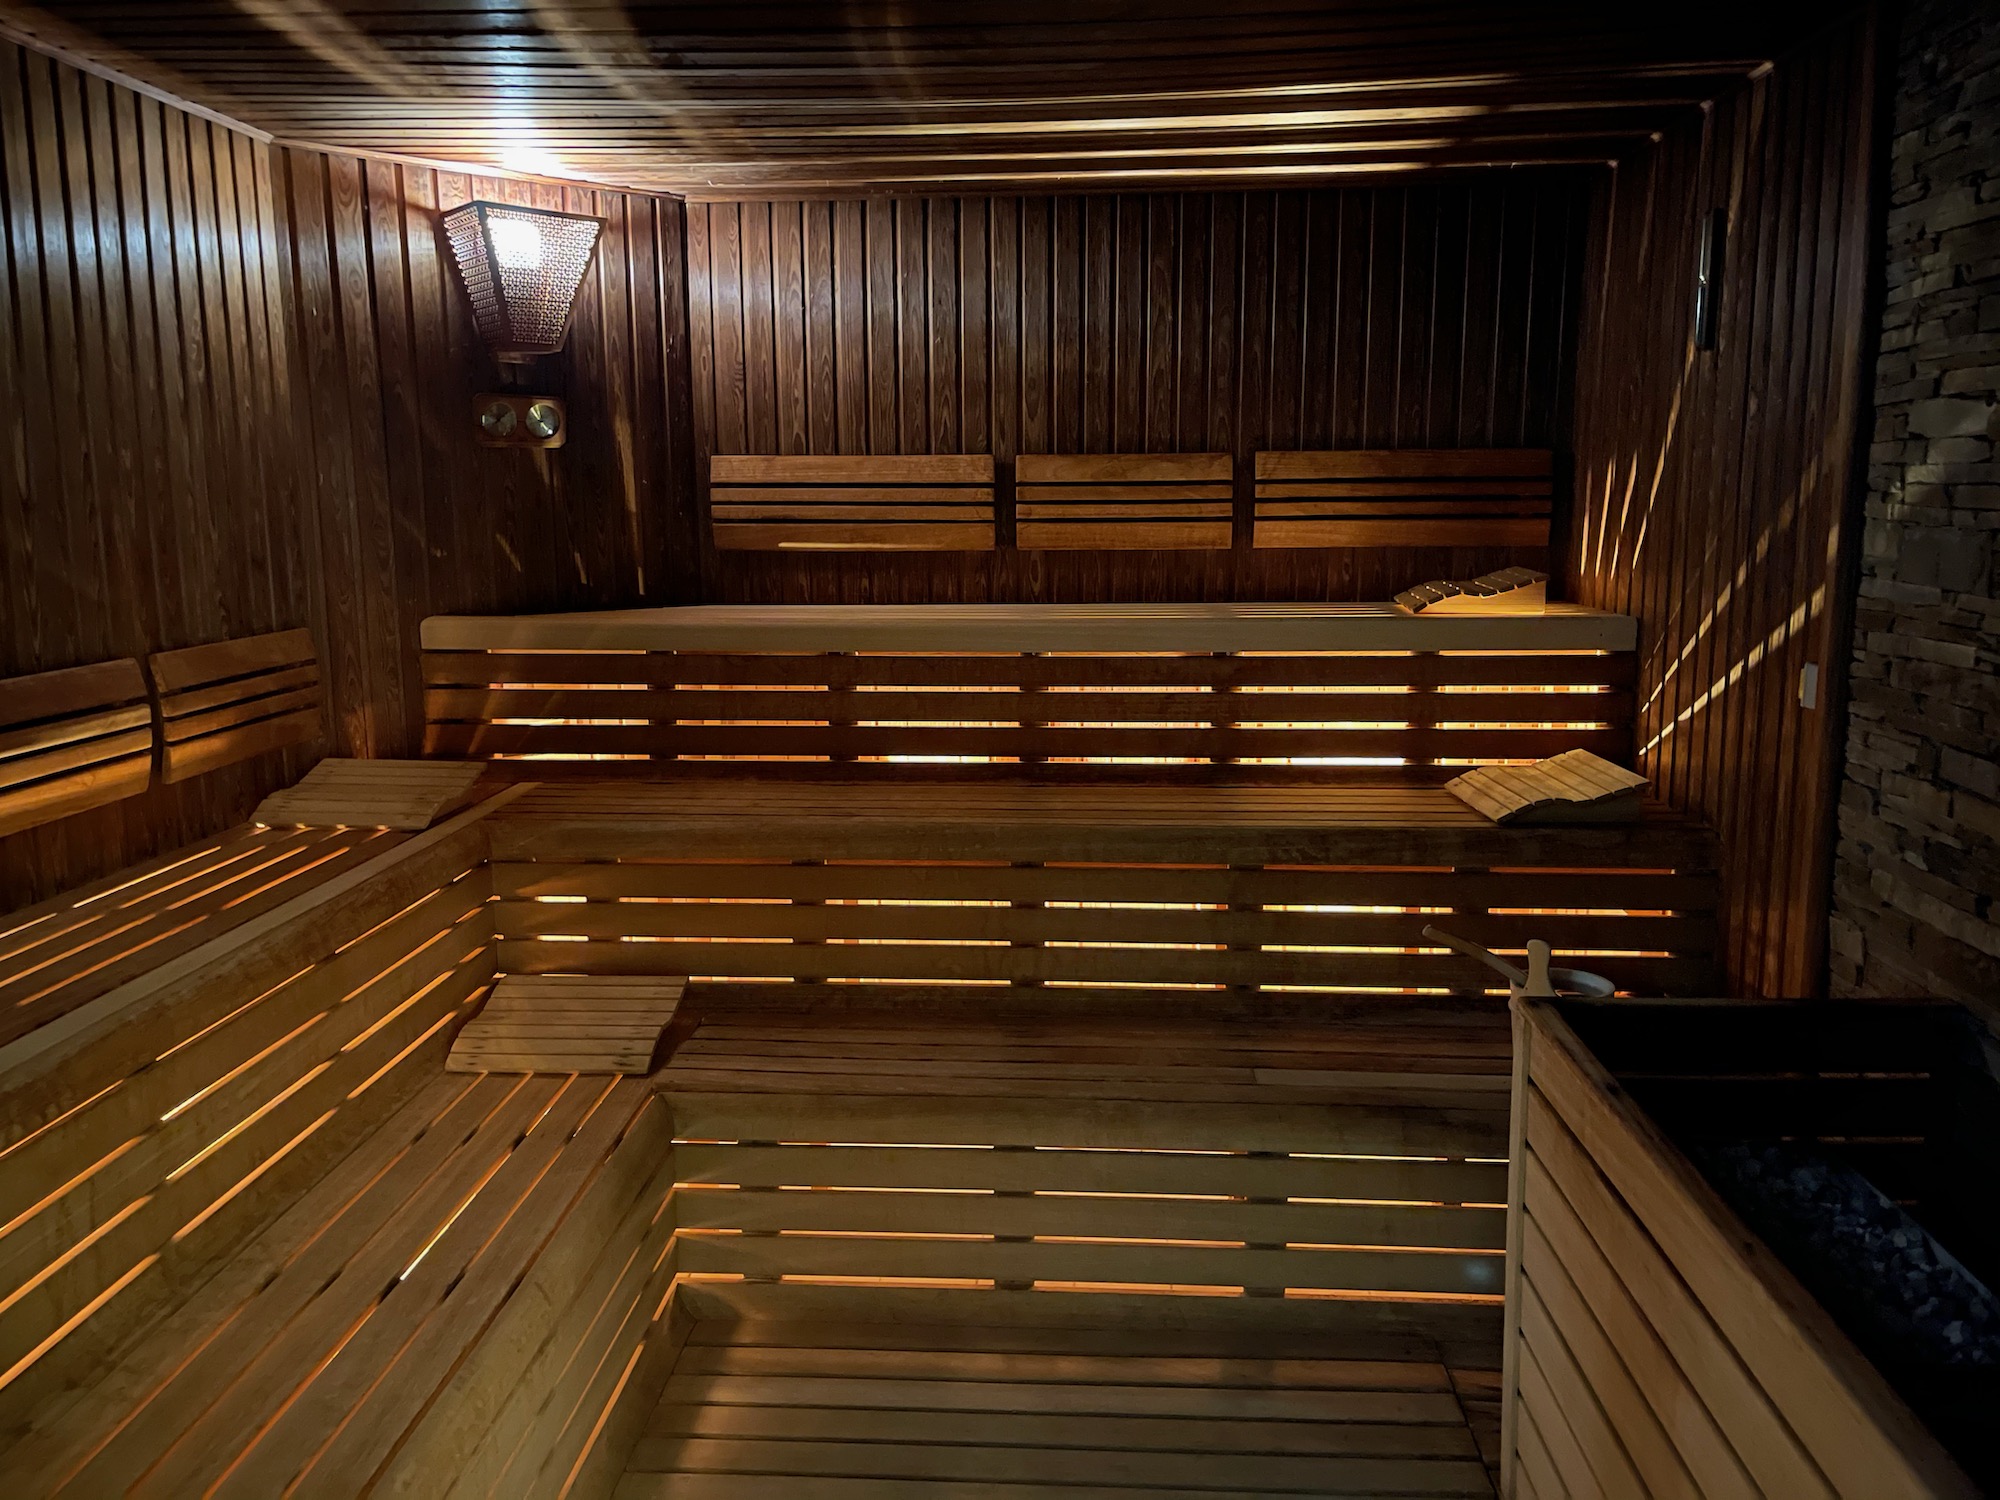 inside a wooden sauna